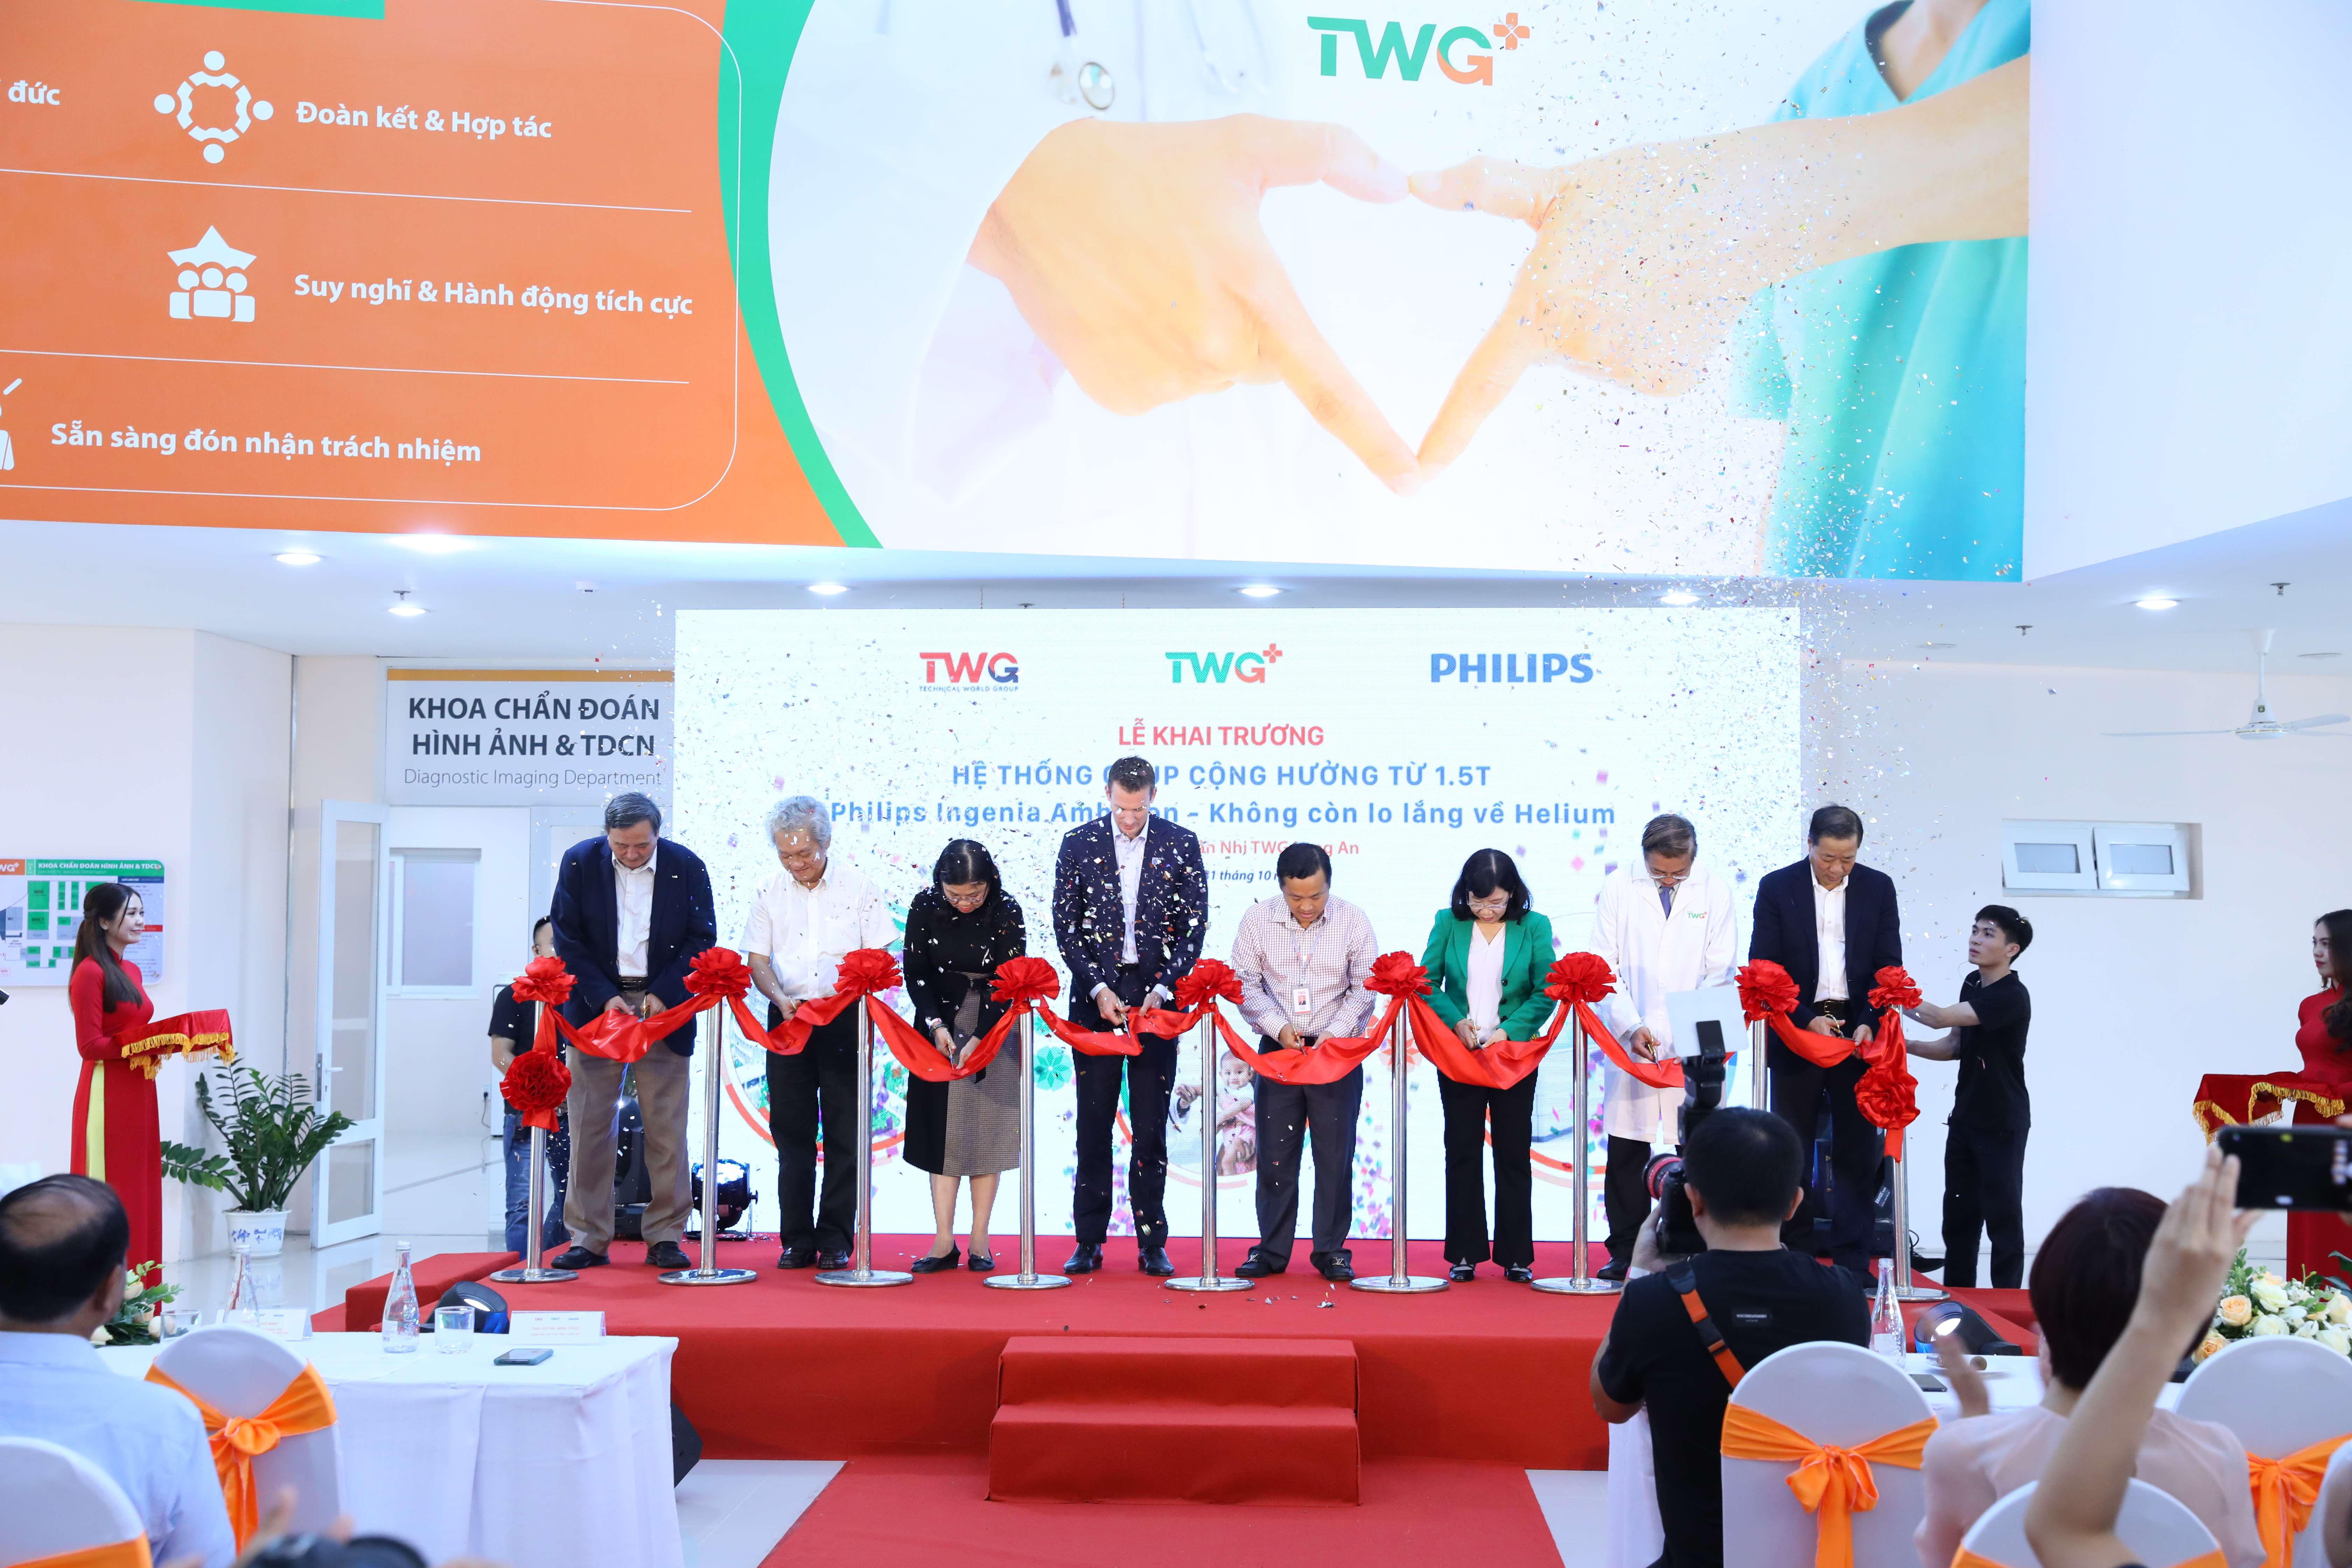 Bệnh viện Sản nhi TWG Long An khai trương hệ thống cộng hưởng từ 1.5T Philips Ingenia Ambition đầu tiên tại Việt Nam